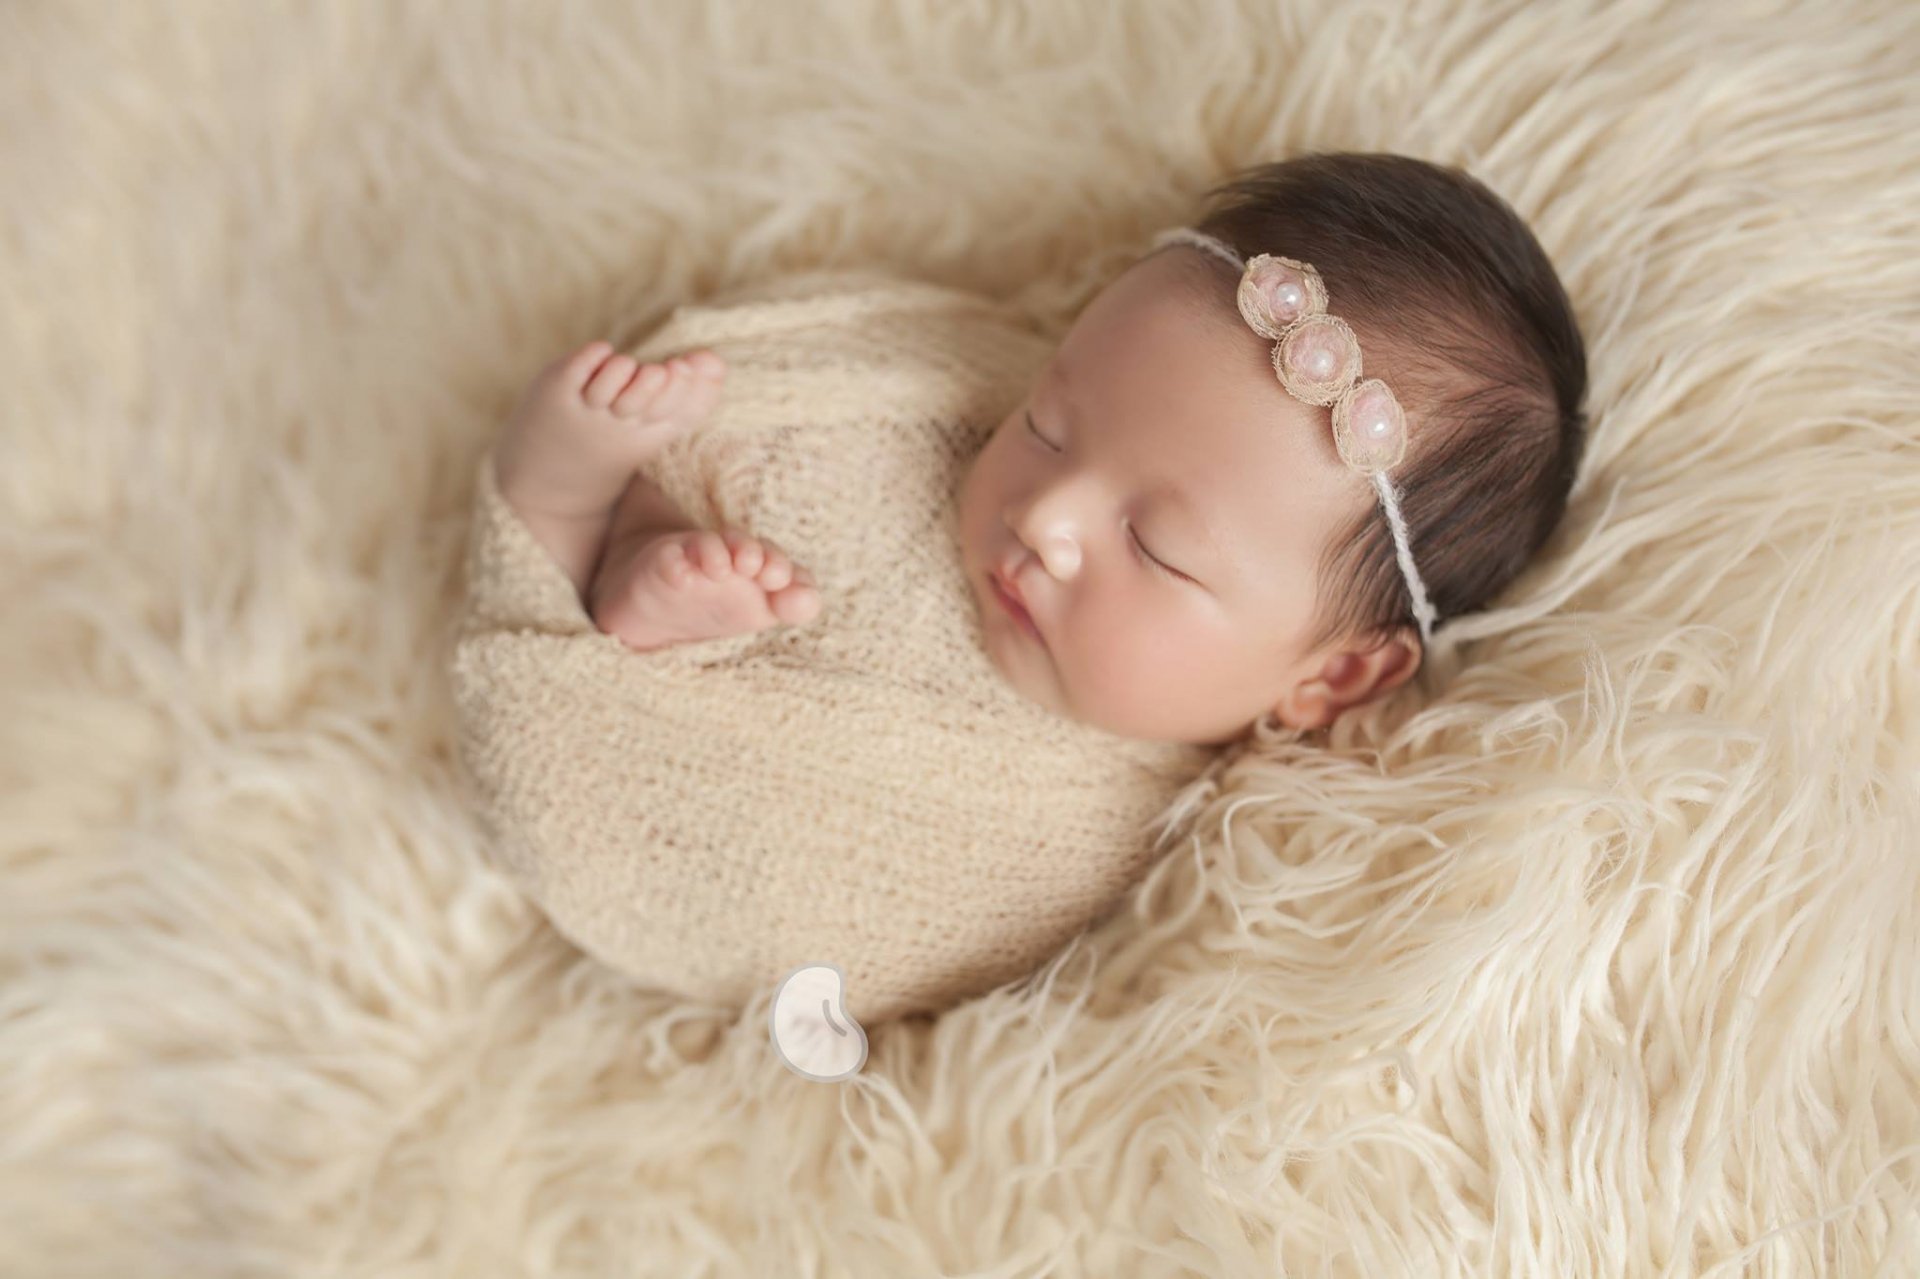 Em bé sơ sinh không chỉ đáng yêu, mà còn rất đẹp và dễ thương! Hãy thưởng thức những hình ảnh này và cảm nhận được sự tinh tế và ấm áp của nó.